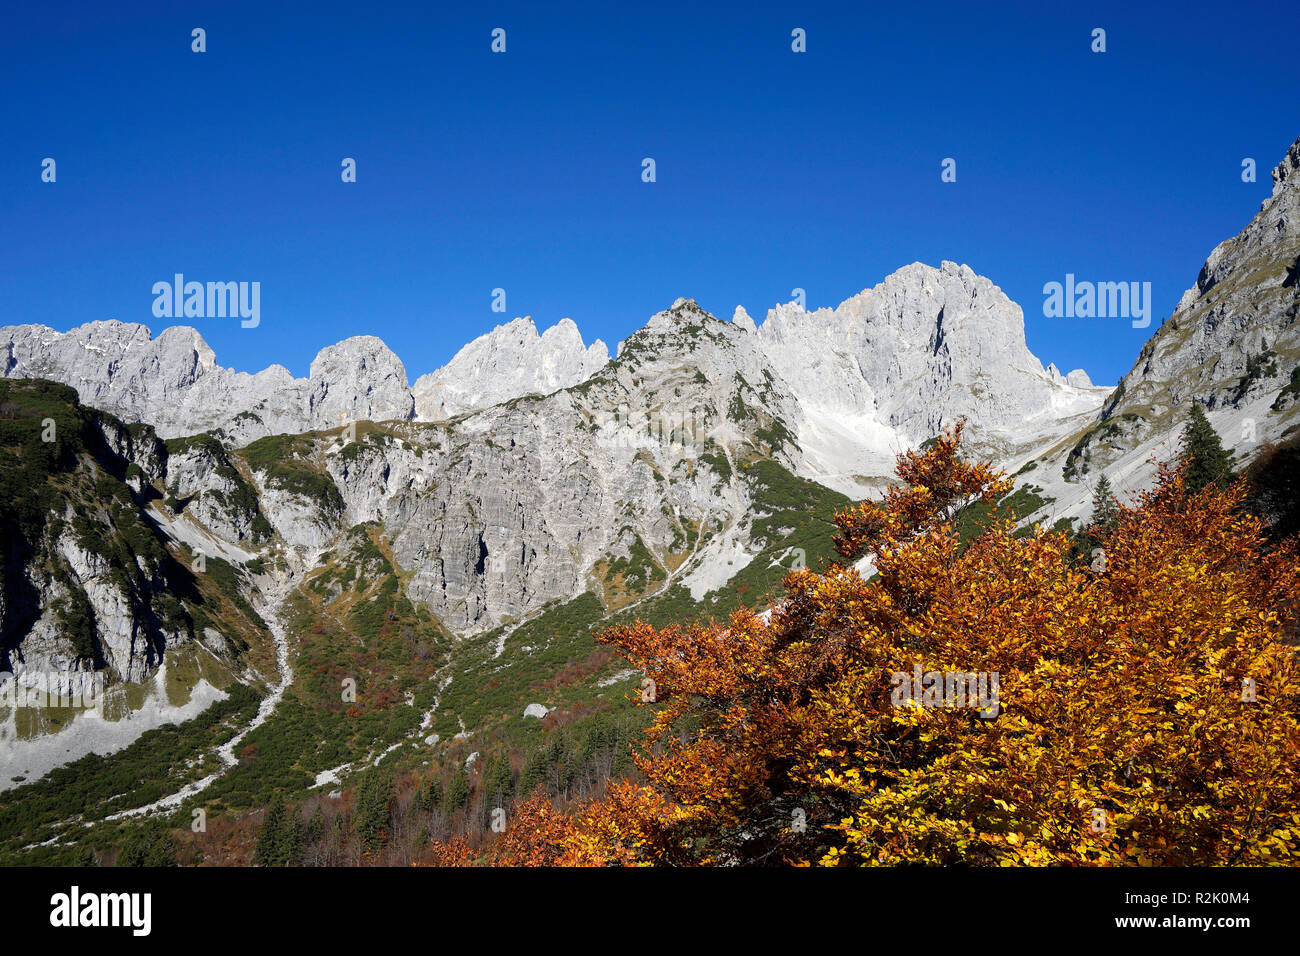 Austria, Tyrol, Wilder Kaiser, Treffauer, Ellmauer Halt, Karlspitze, Ellmauer Tor, landscape Stock Photo